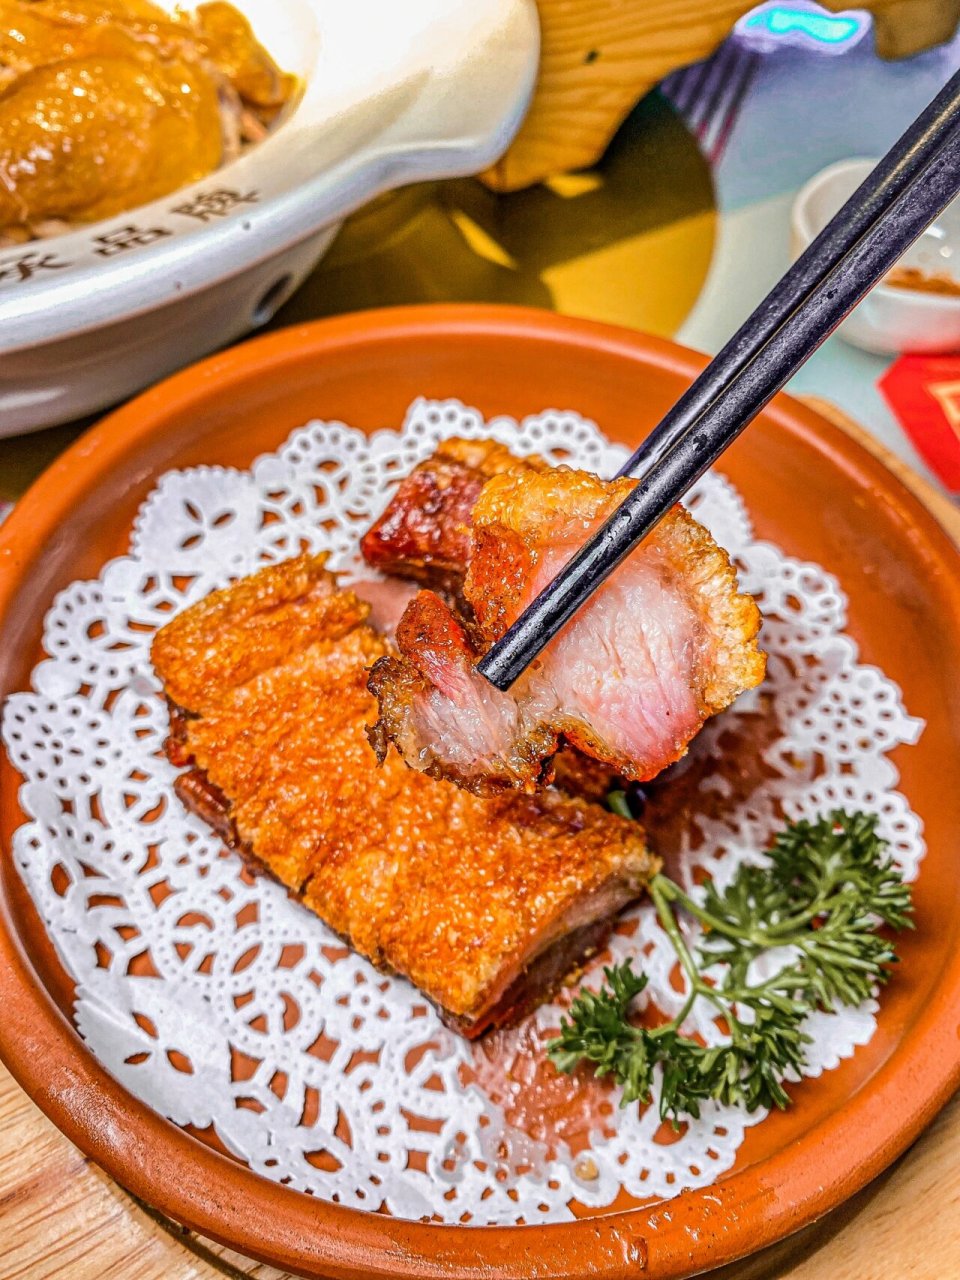 惠州这家传统古法制作的盐焗鸡!咸香入味 果然是非遗传承品牌!